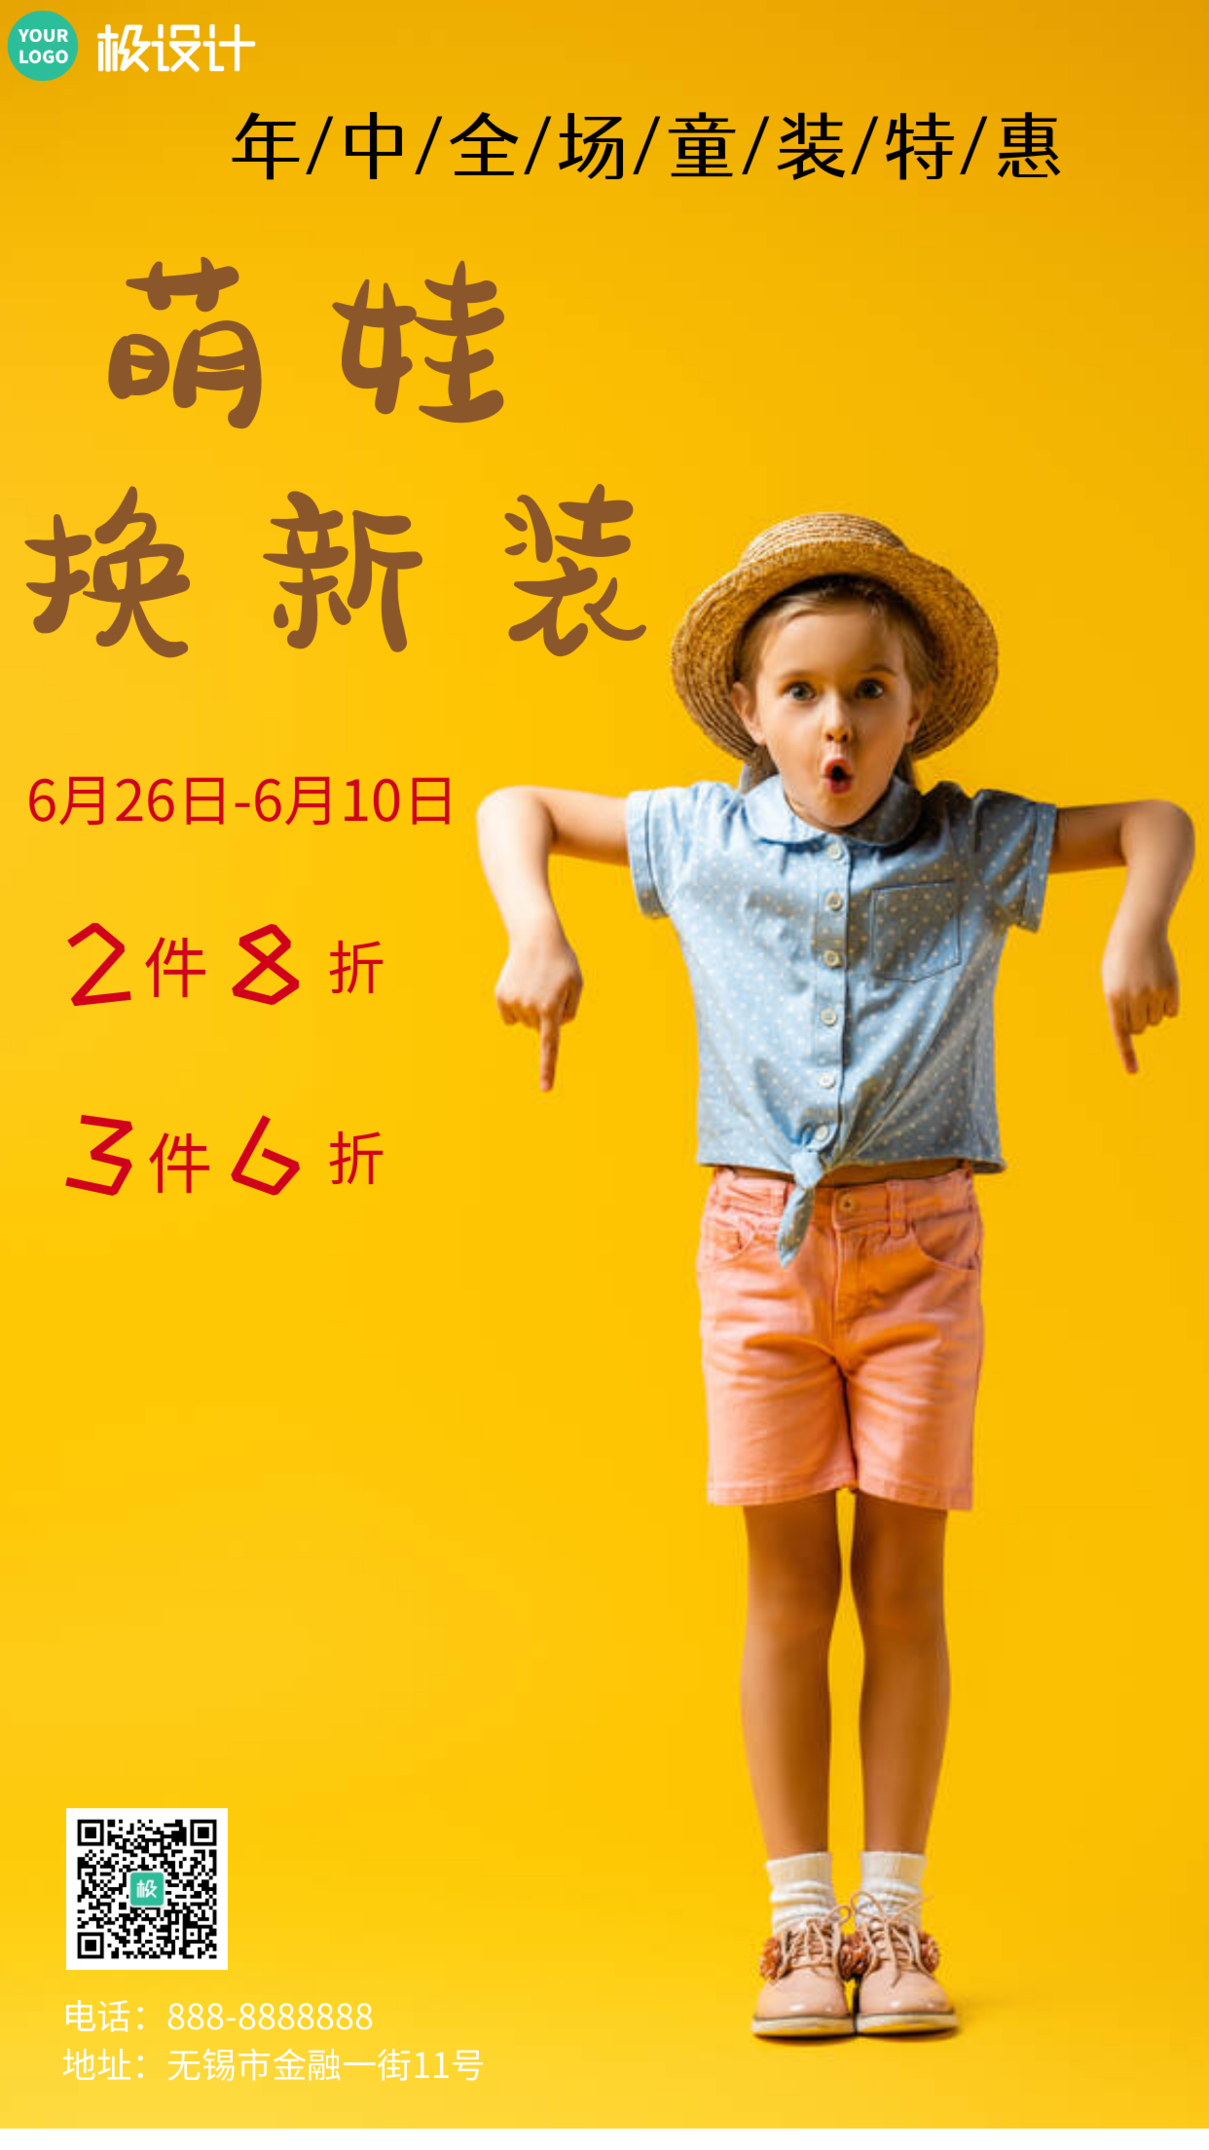 黄色 背景萌娃换新装年中童装活动摄影风手机营销海报